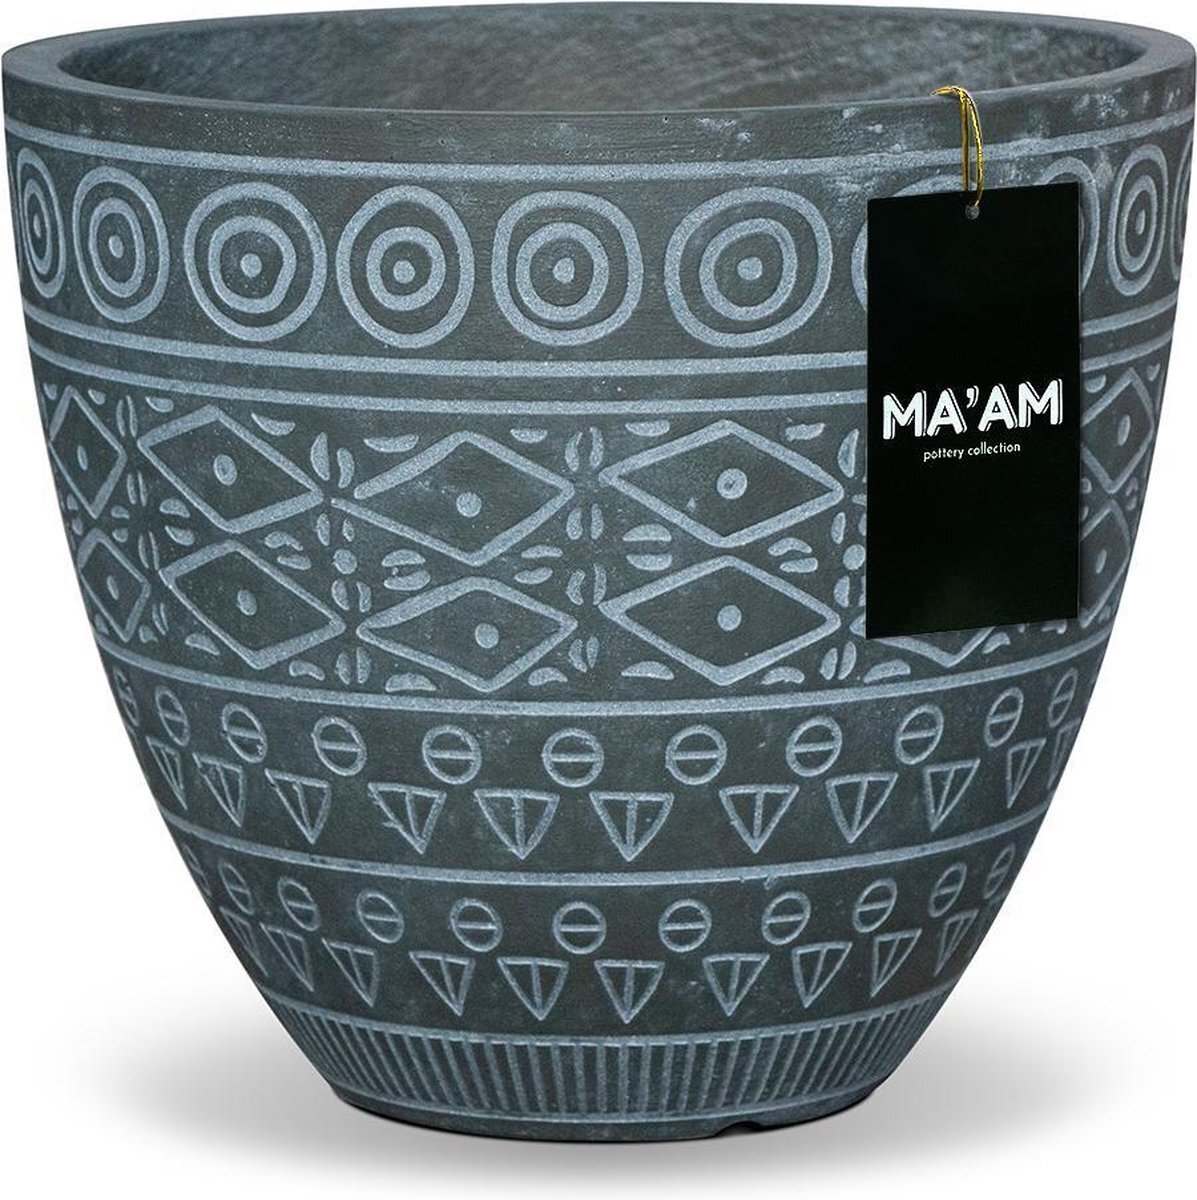 MA'AM pottery collection MA'AM Fay - bloempot - rond - 27x24 - groen - bohemian/botanisch/marokkaans interieur/tuin - trendy plantenpot